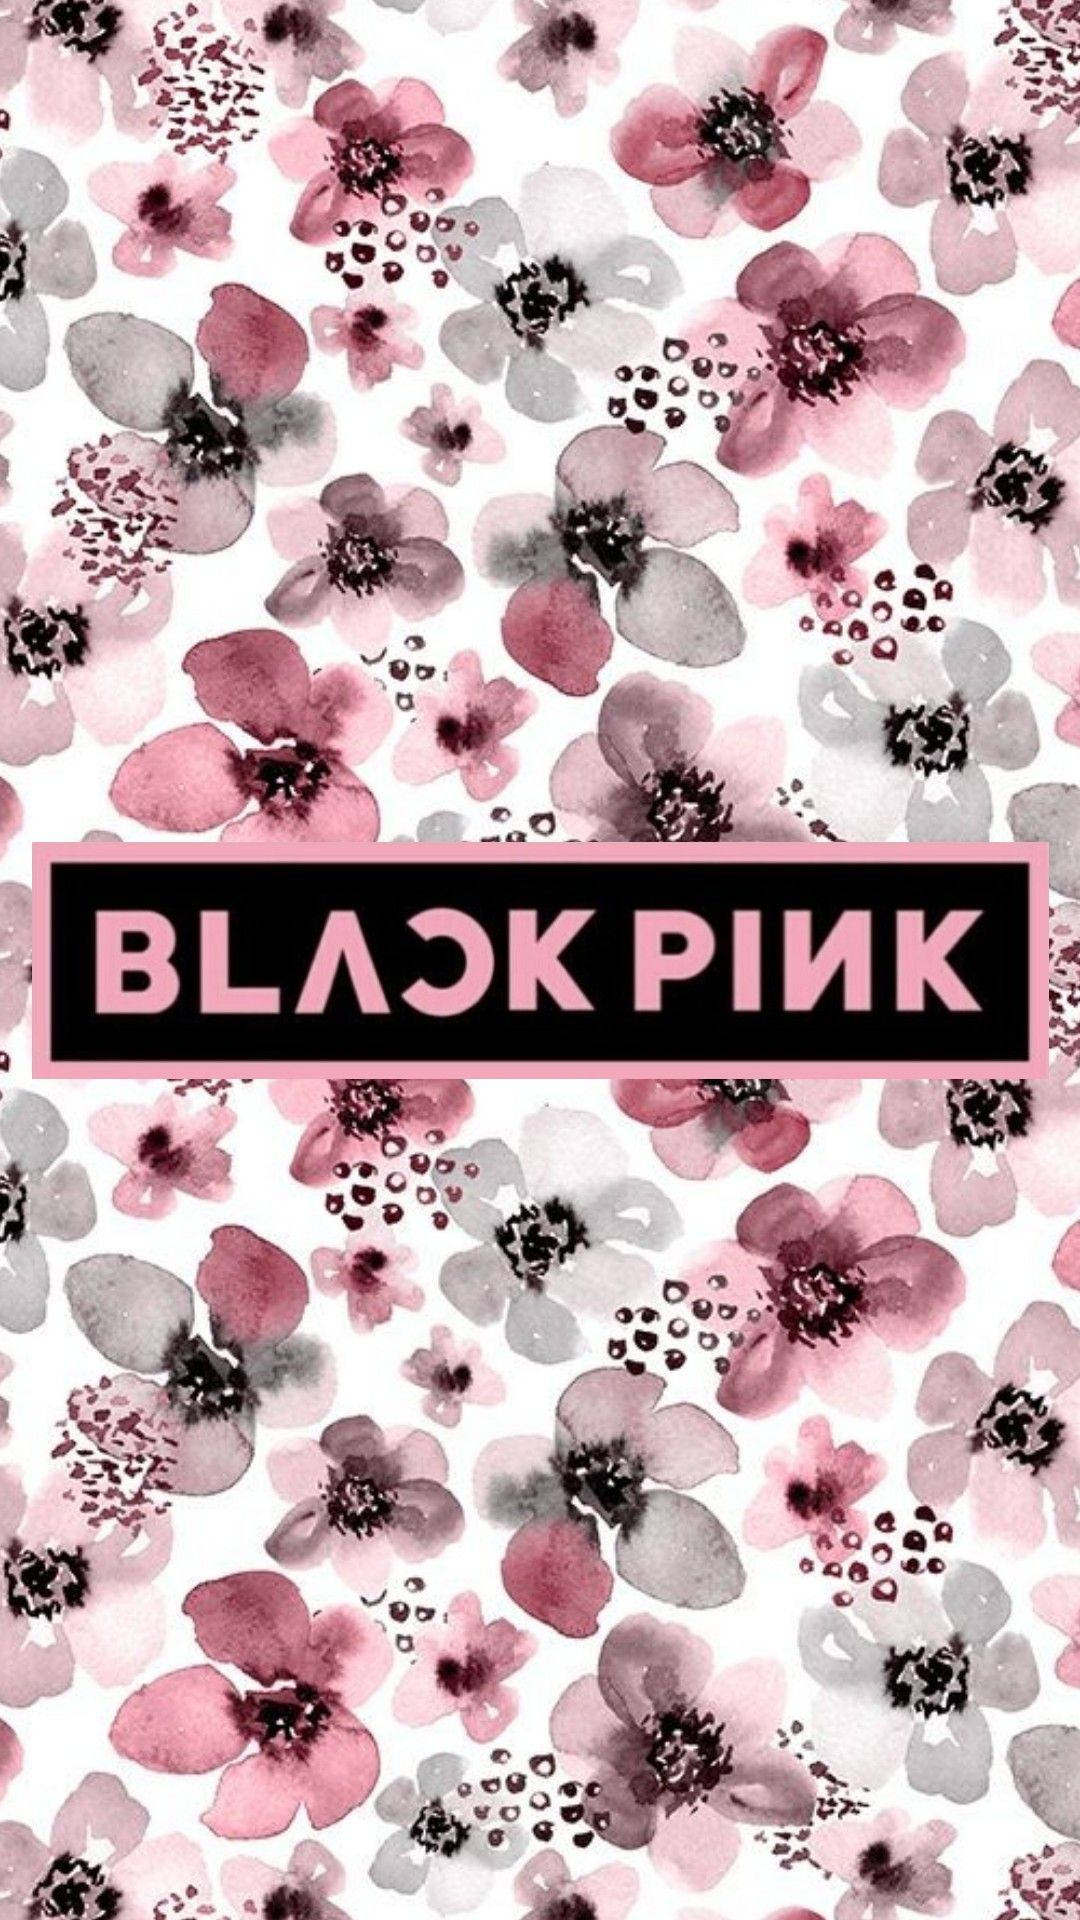 Blackpink Logo Over Black And Pink Flowers Background